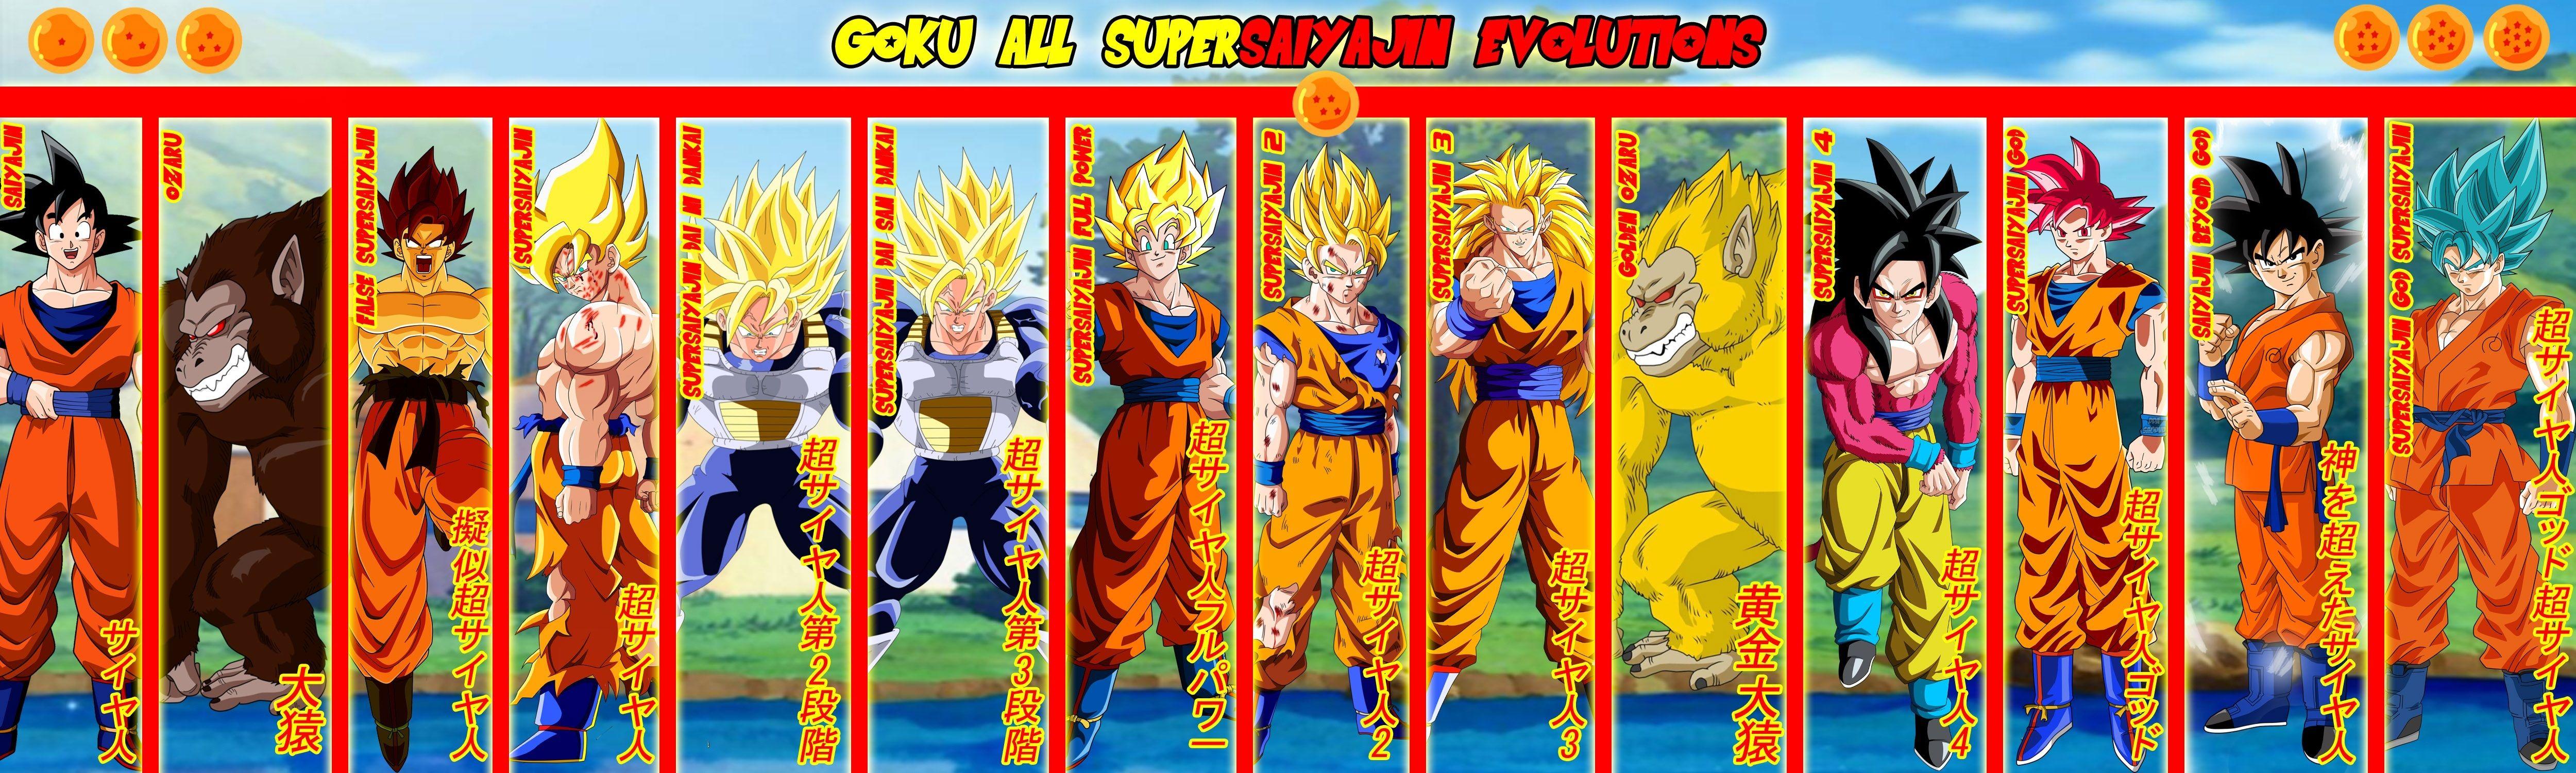 5000x1500 Goku Supersaiyajin Evolutions Hình nền Full HD